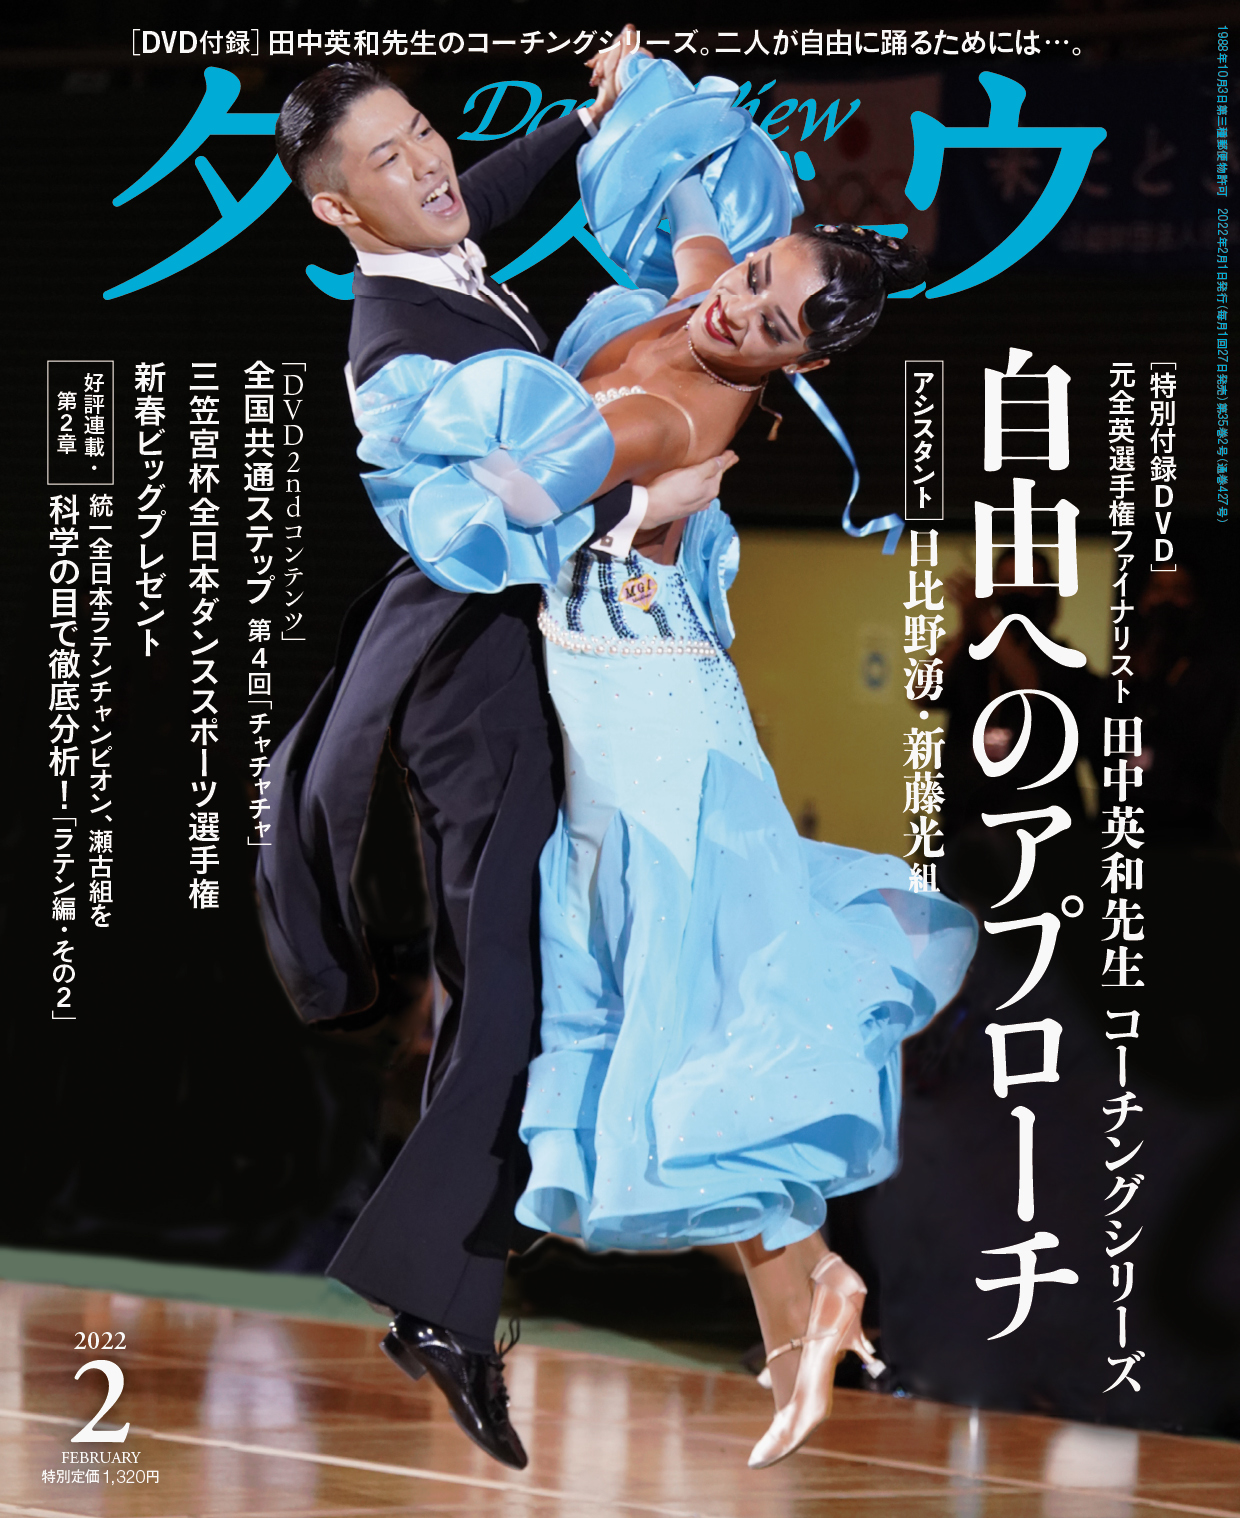 ミルコ・ゴッゾーリu0026アレッシア・ベティ組 社交ダンスレッスン DVD 